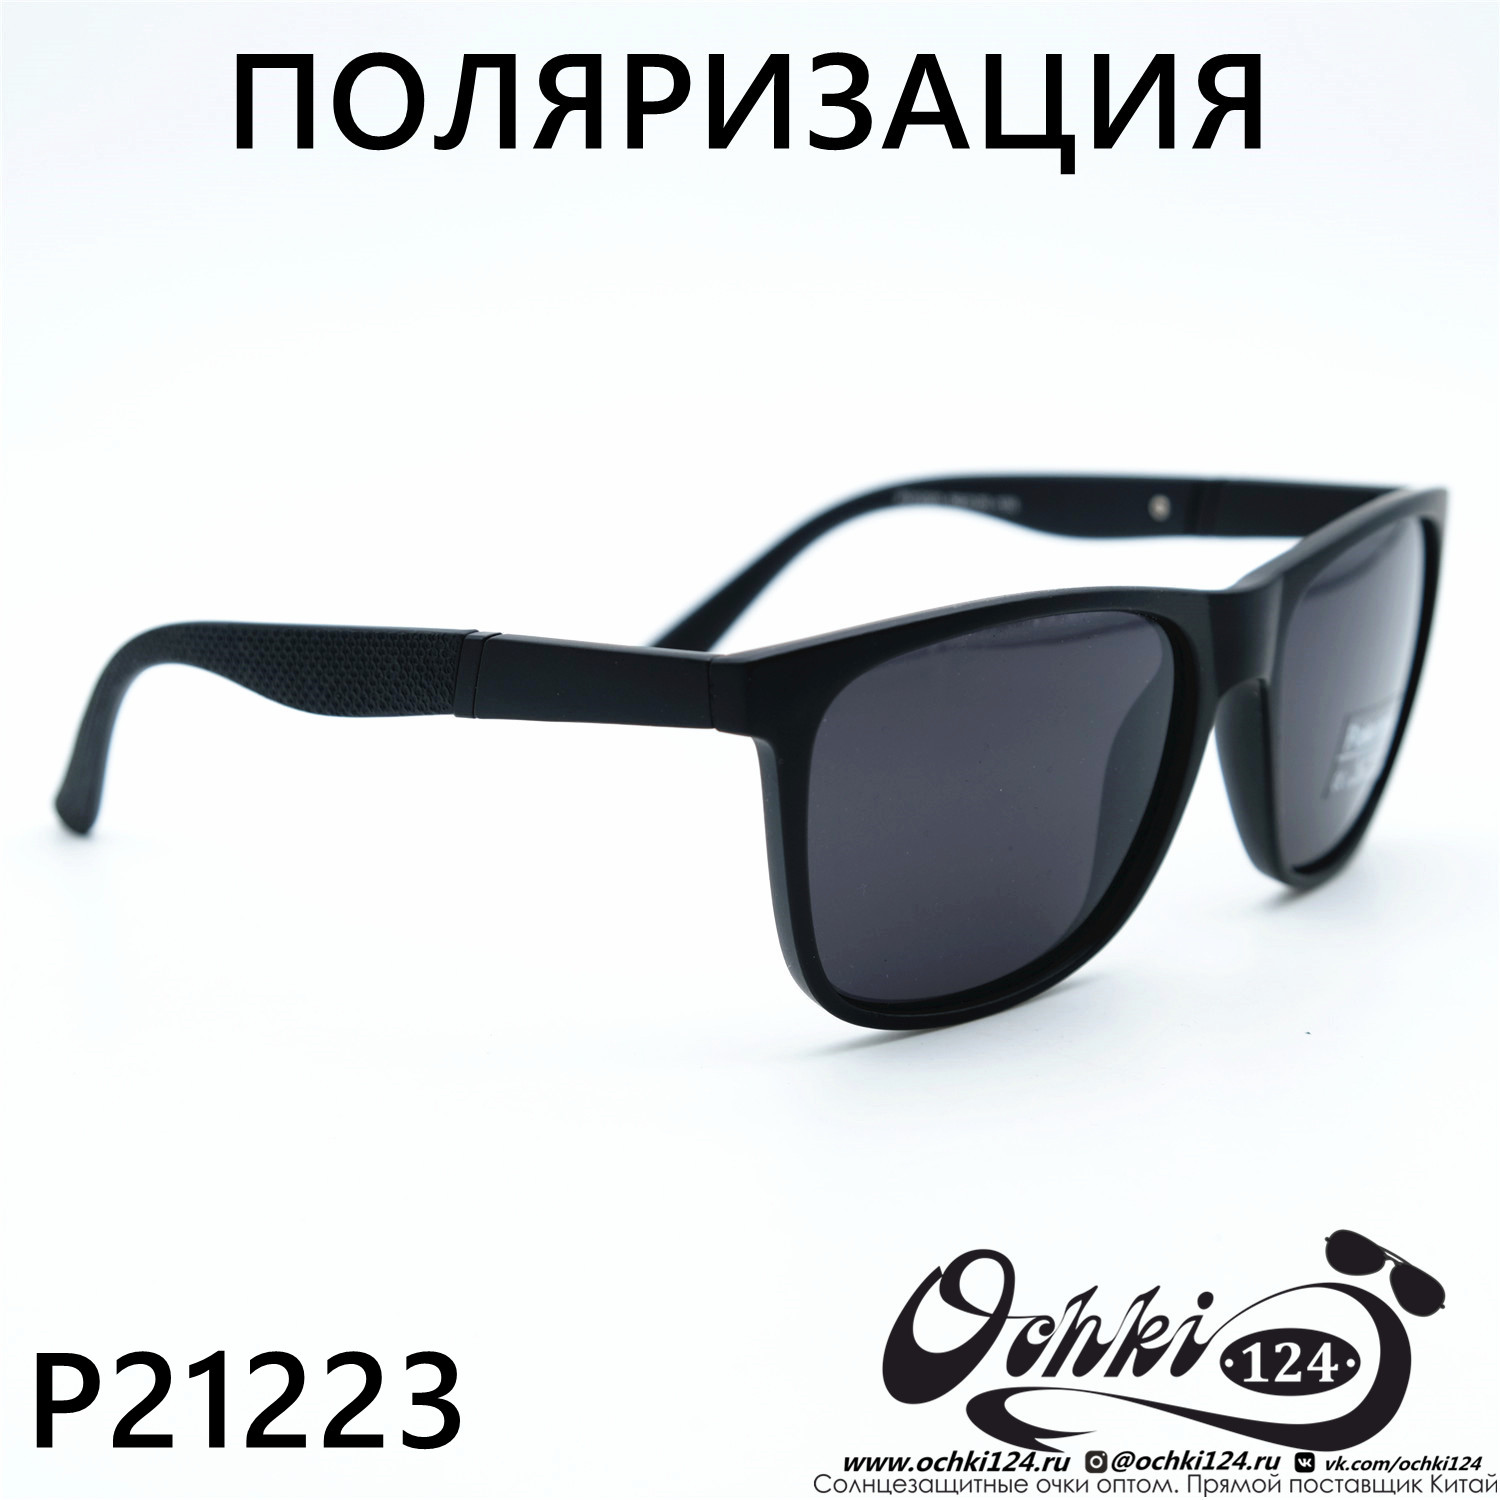  Солнцезащитные очки картинка 2023 Мужские Стандартные Polarized P21223-C3 